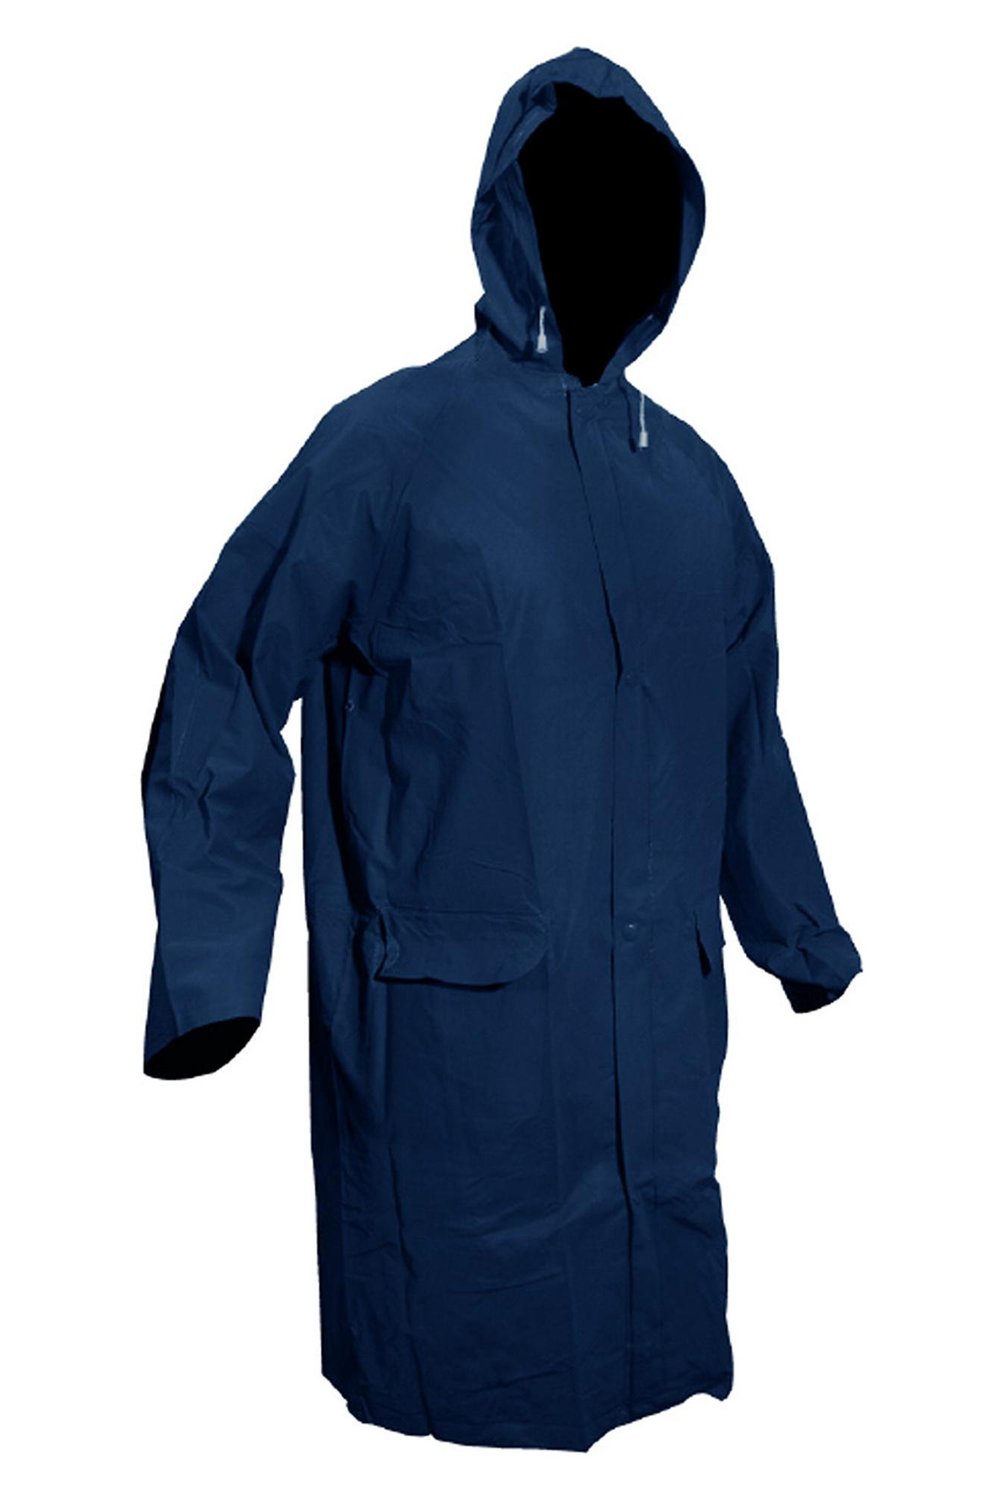 REDLINE - Abrigo impermeable talla M azul